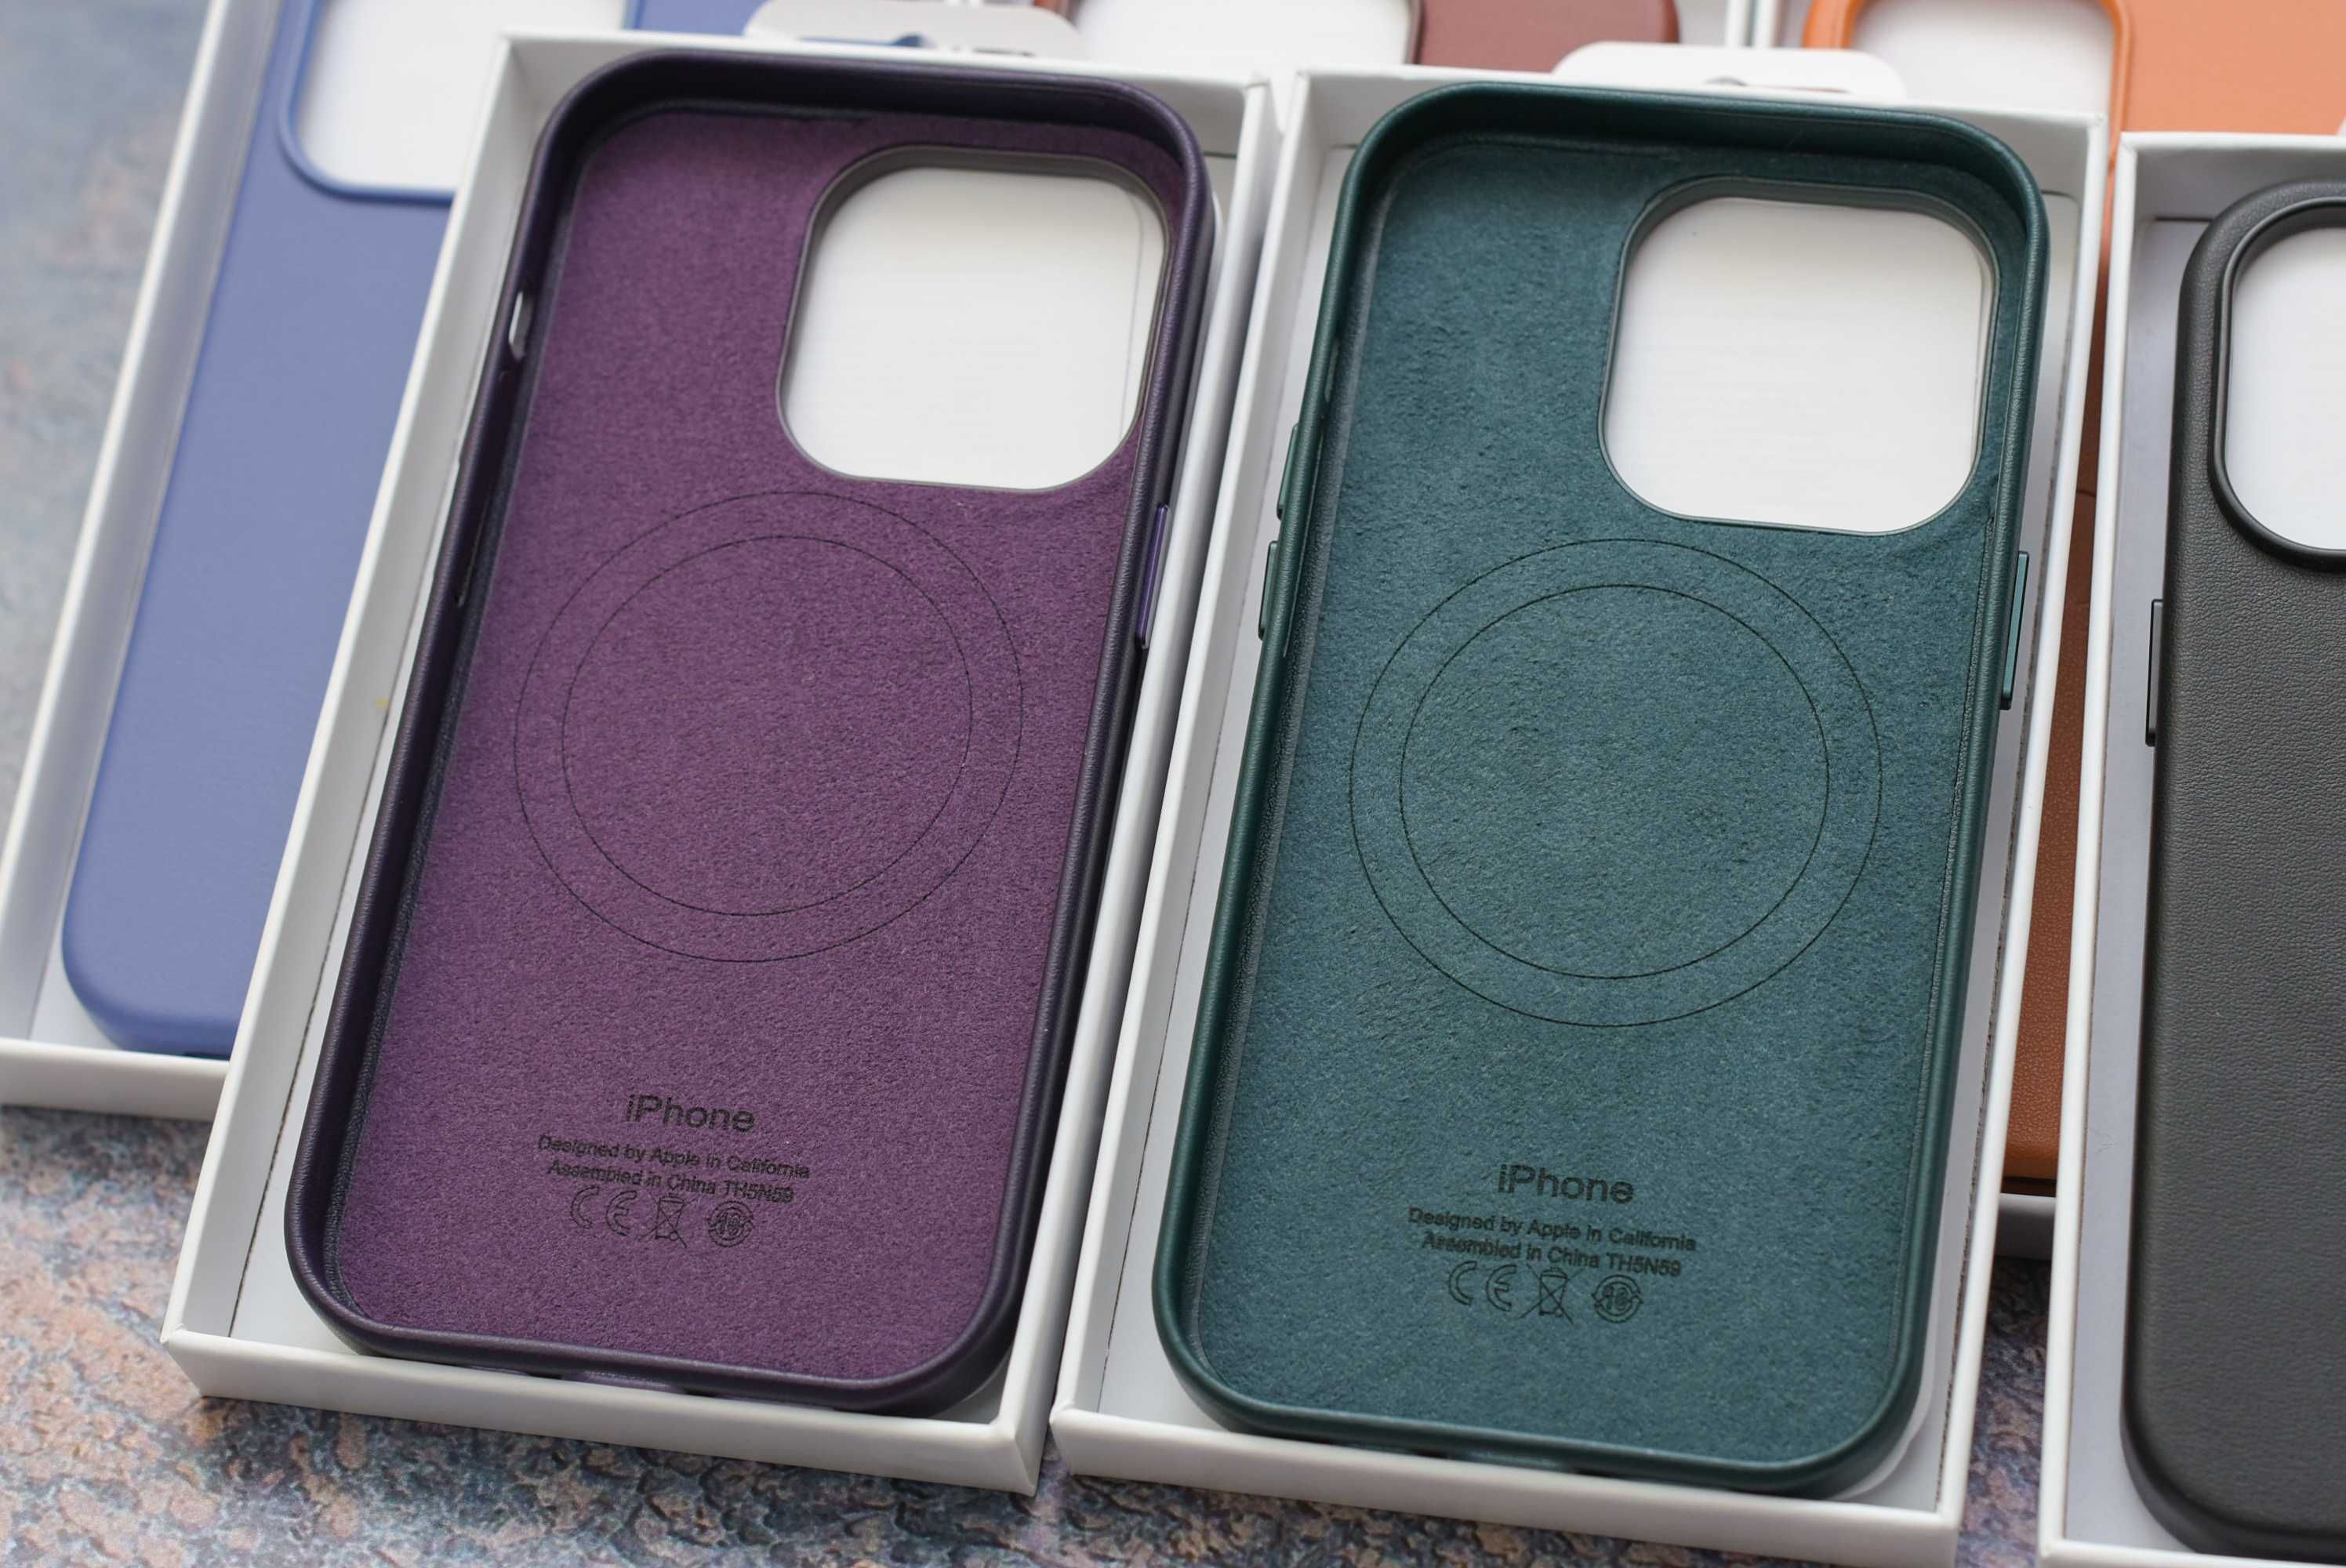 Оригинальный официальный чехол Iphone кожаный силиконовый